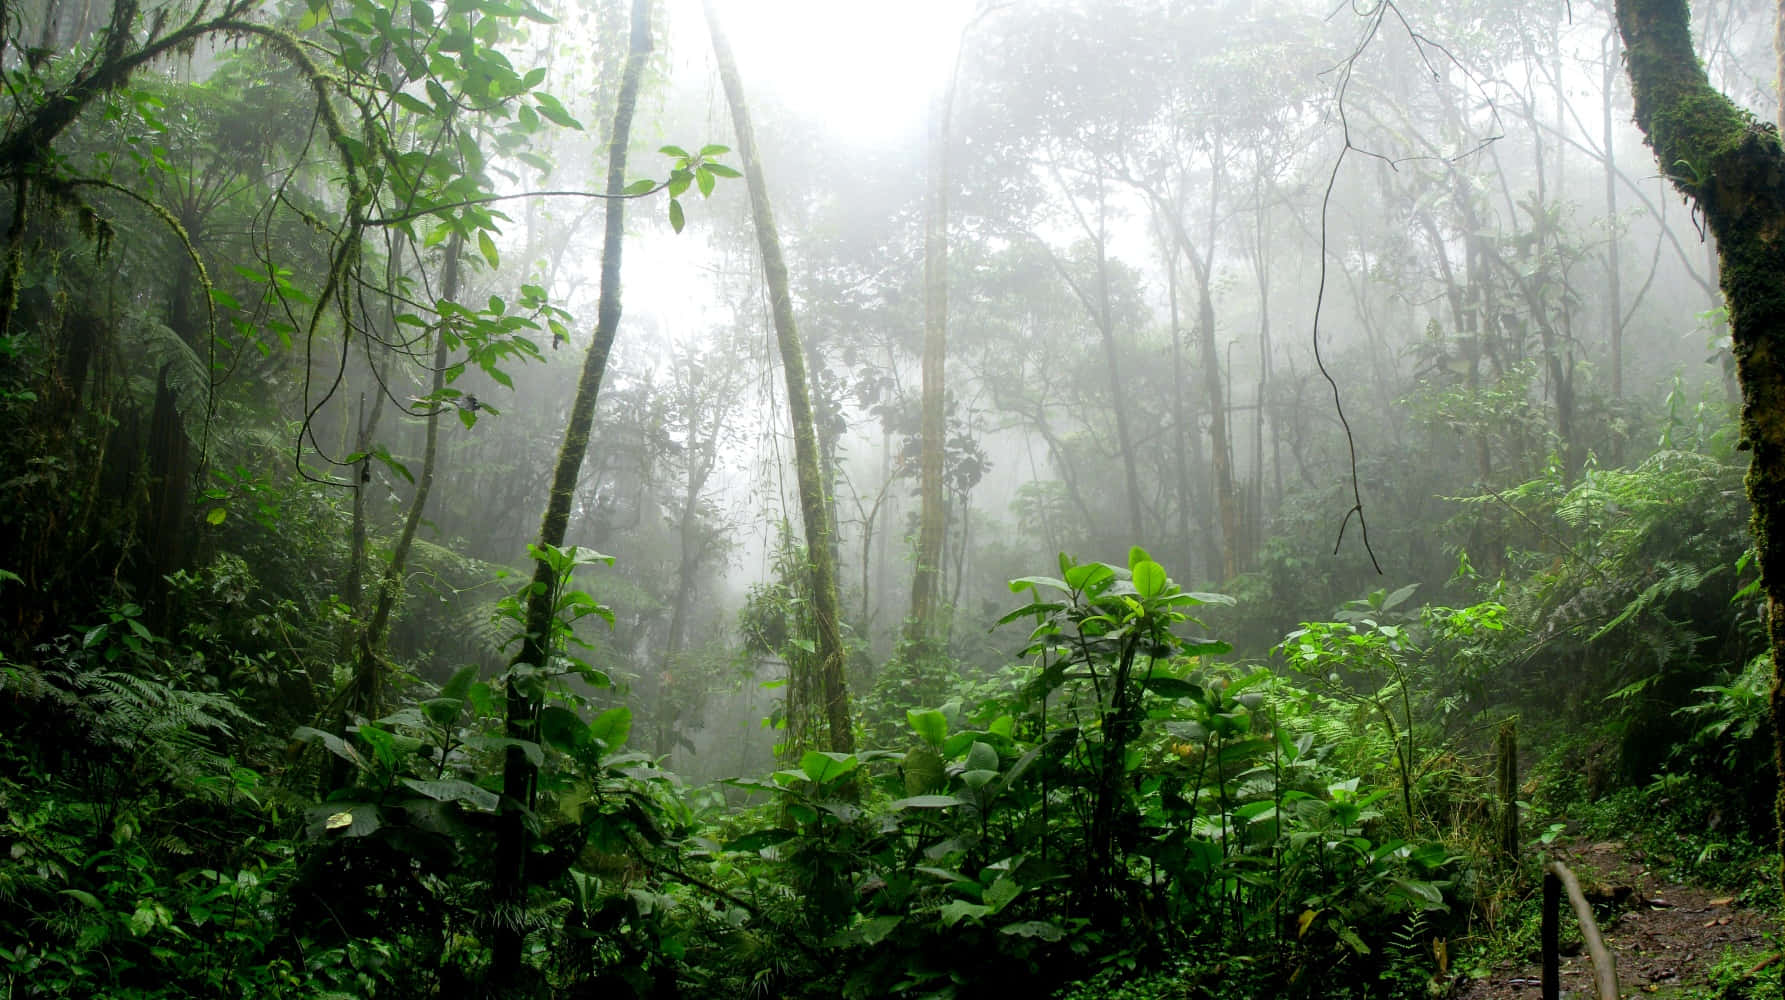 A Trail Through A Lush Tropical Forest